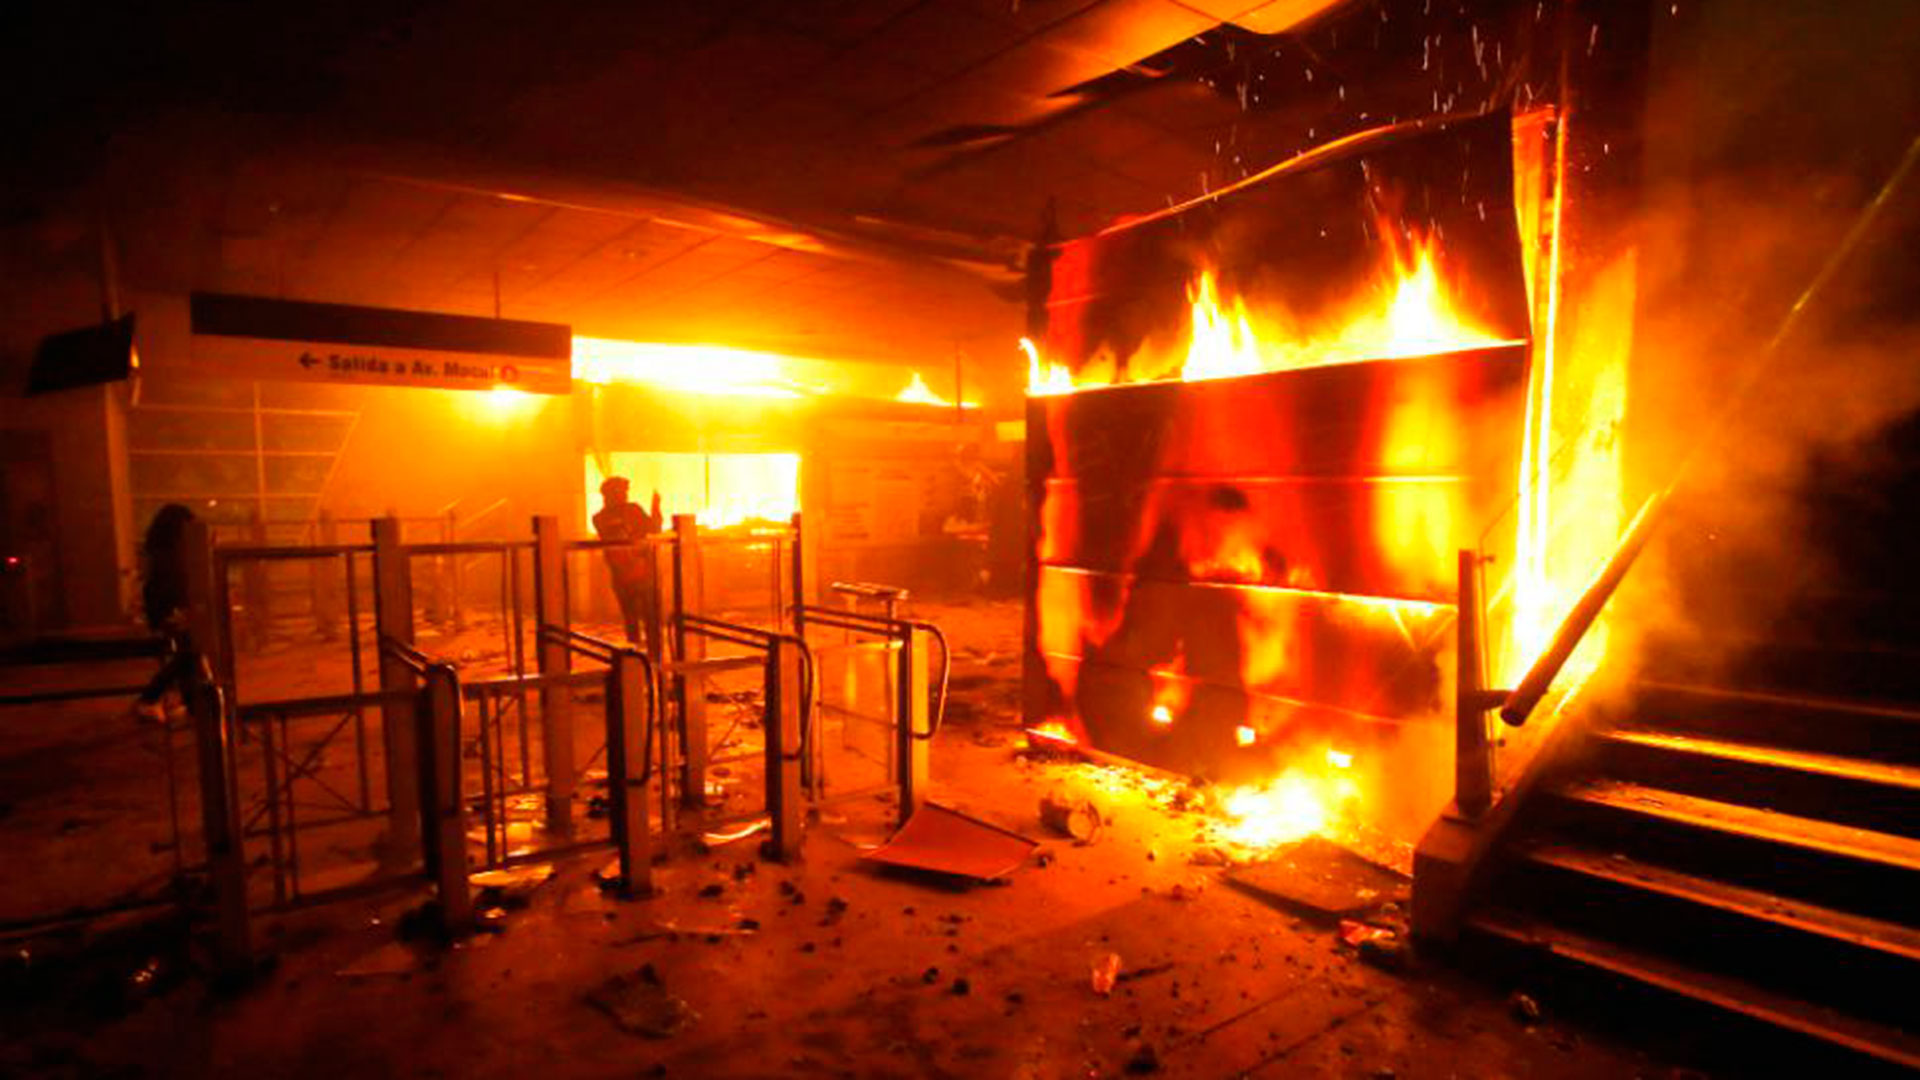 Las imágenes del incendio y destrucción en la estación de metro La Granja ha suscitado una querella interpuesta por el abogado chileno de DD.HH. Luis Mariano Rendón en contra de Carabineros de Chile